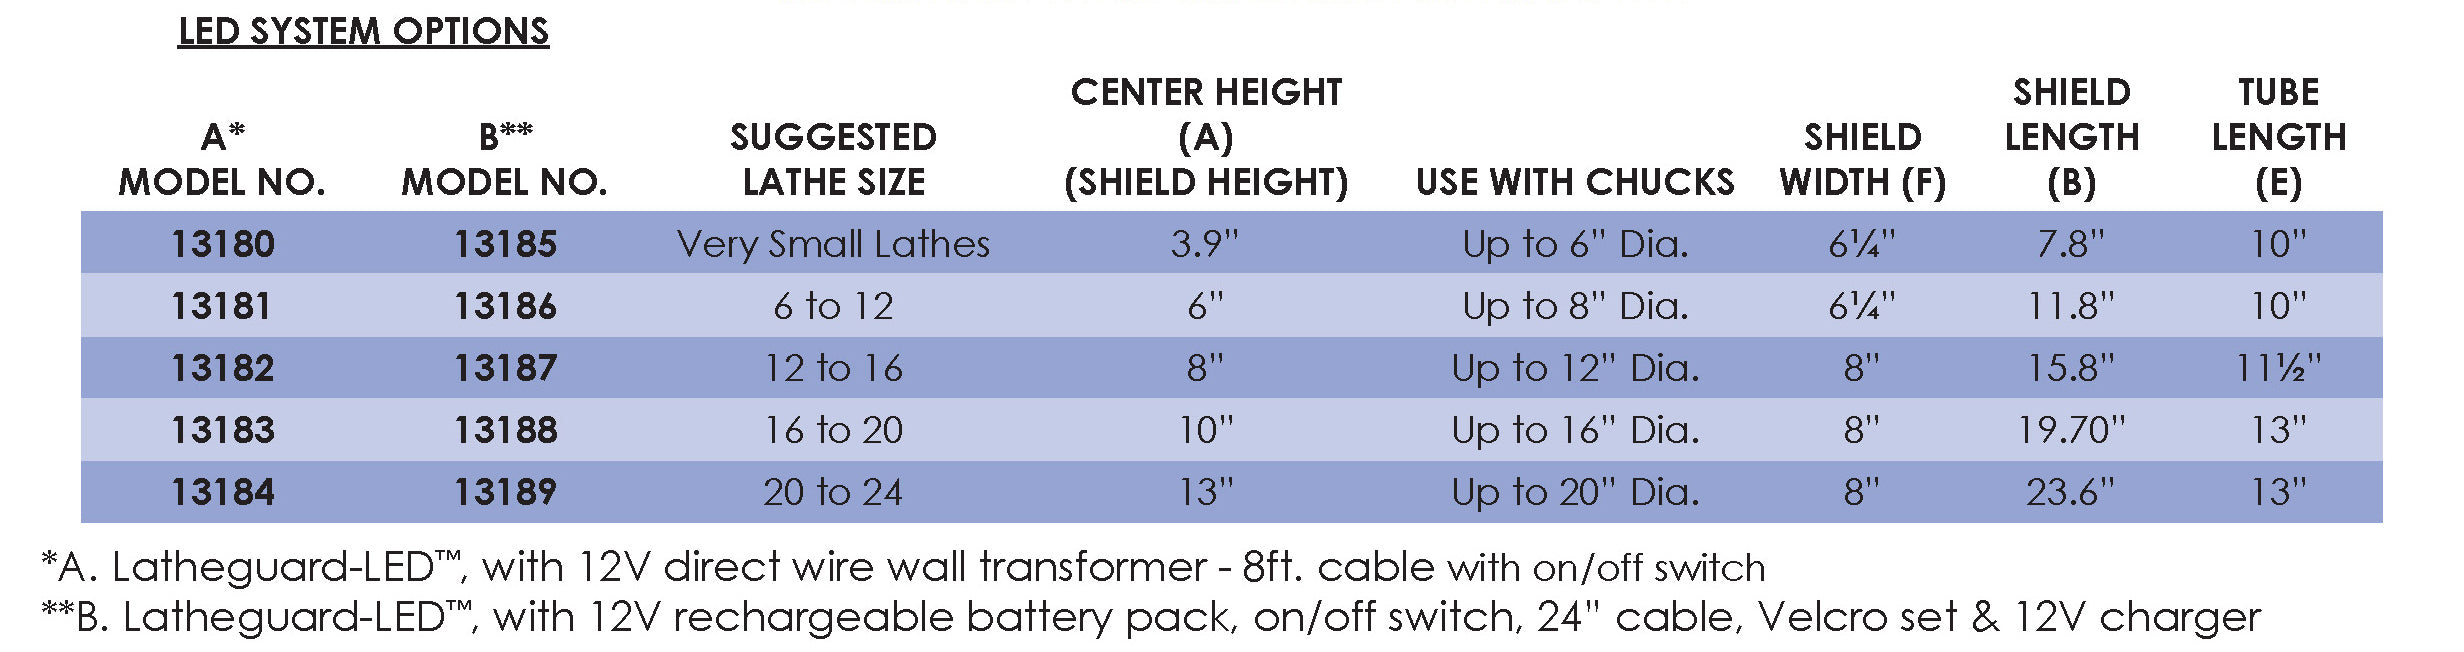 Latheguard-LED - Medium/Large - 12V Rechargeable Battery Pack